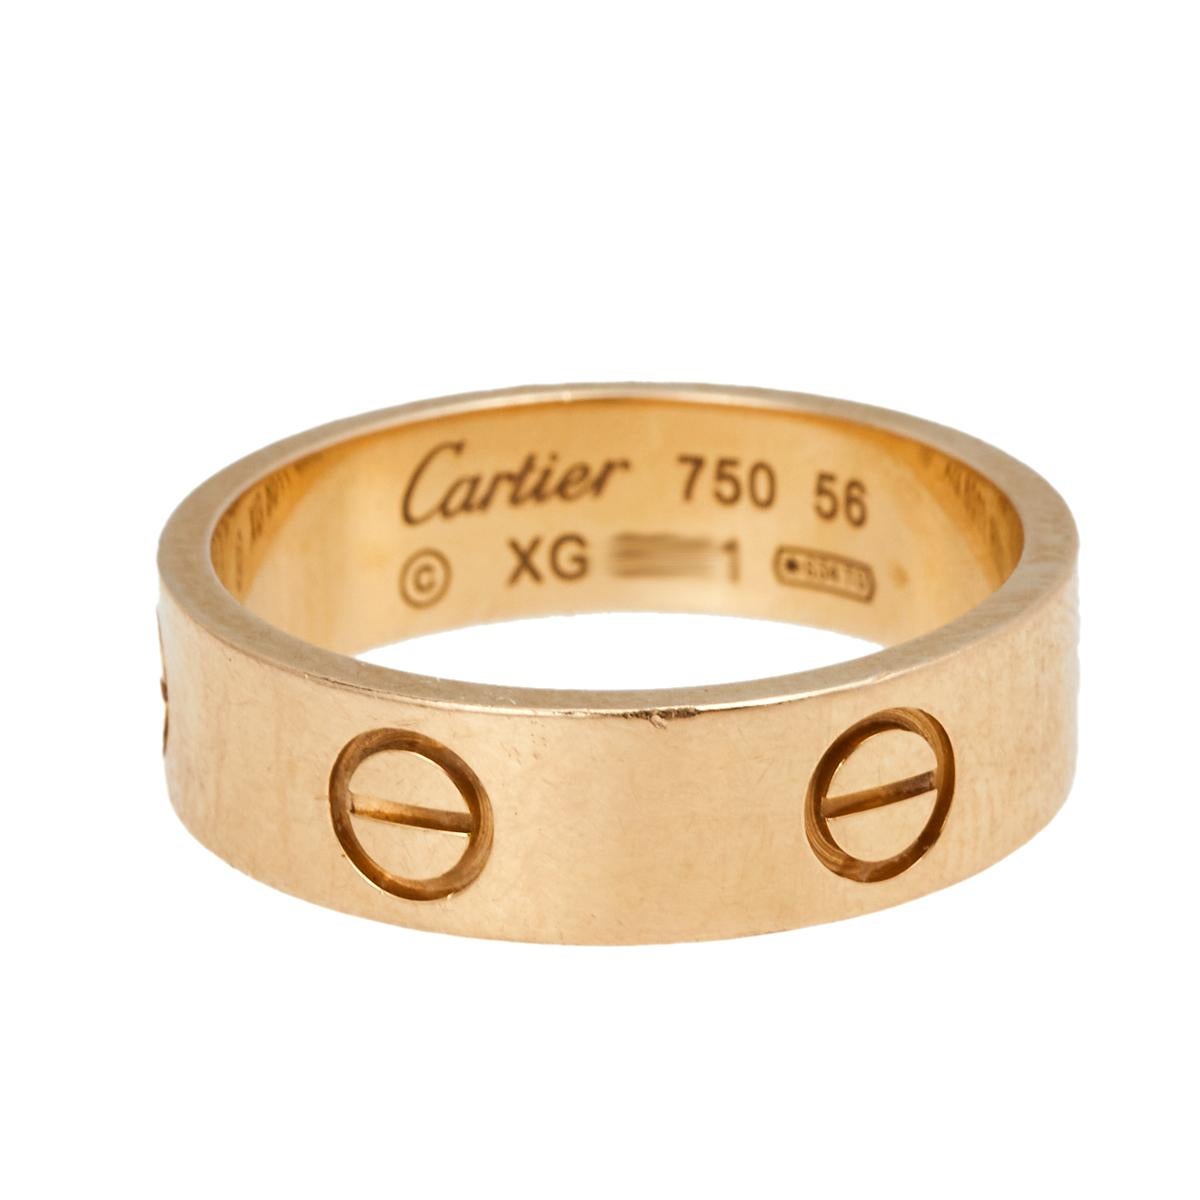 L'un des designs les plus emblématiques et les plus appréciés de la maison Cartier, cette superbe bague Love est une icône de style et de luxe. Fabriquée en or rose 18 carats, cette bague est ornée de vis tout autour de la surface, symboles d'un